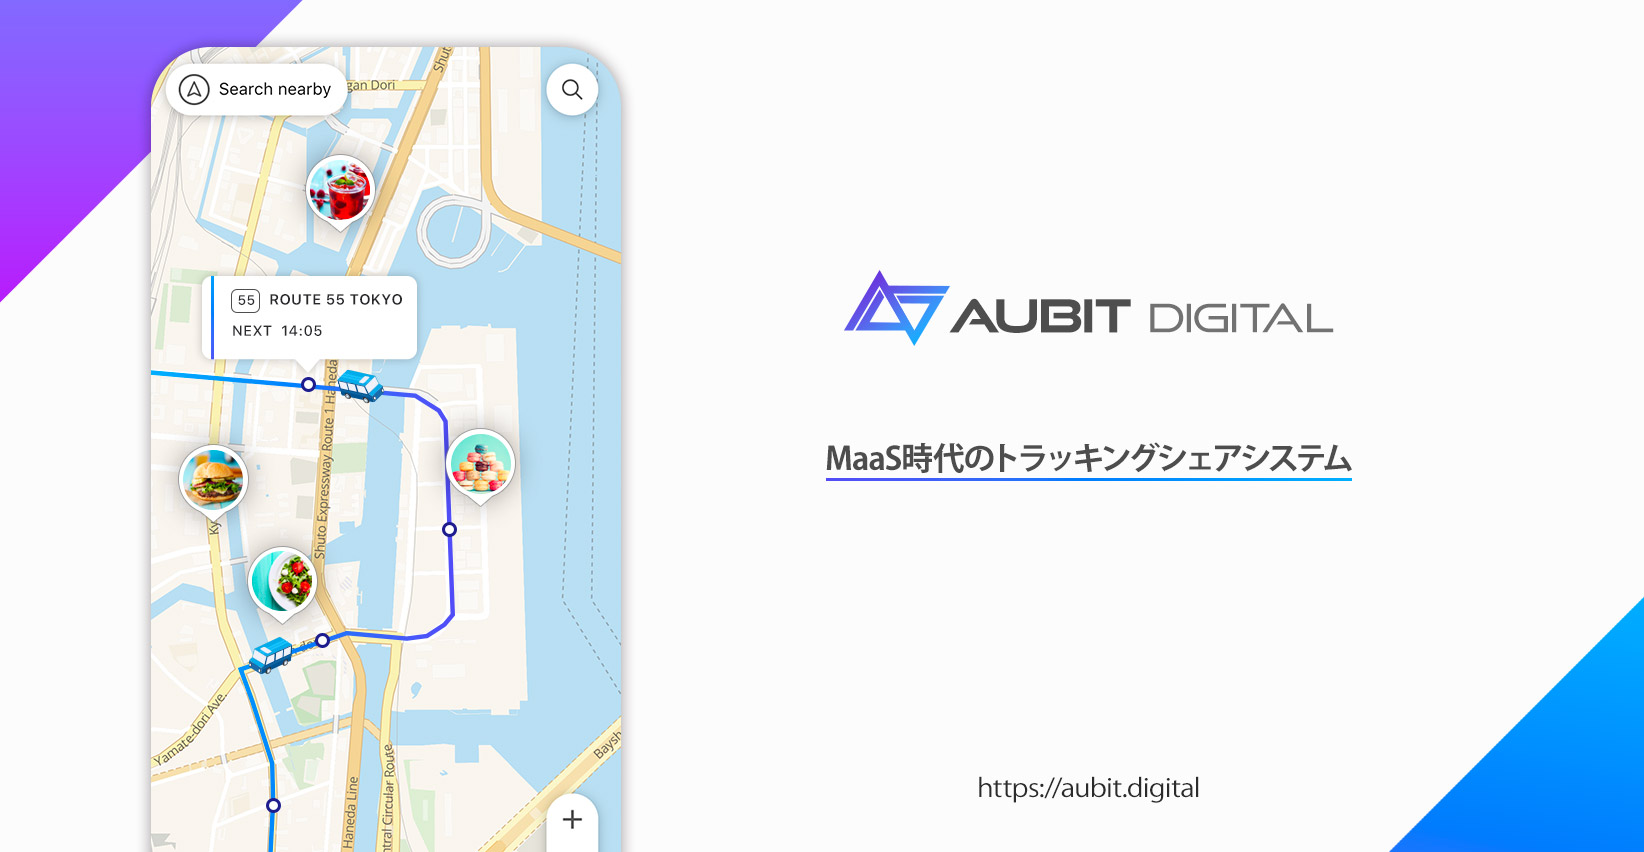 Maas 地方創生 移動を見せる トラッキングシェアシステム デジタルマップで移動 配送状況を常時共有する Aubit Digital を提供開始 ボールドライト株式会社のプレスリリース